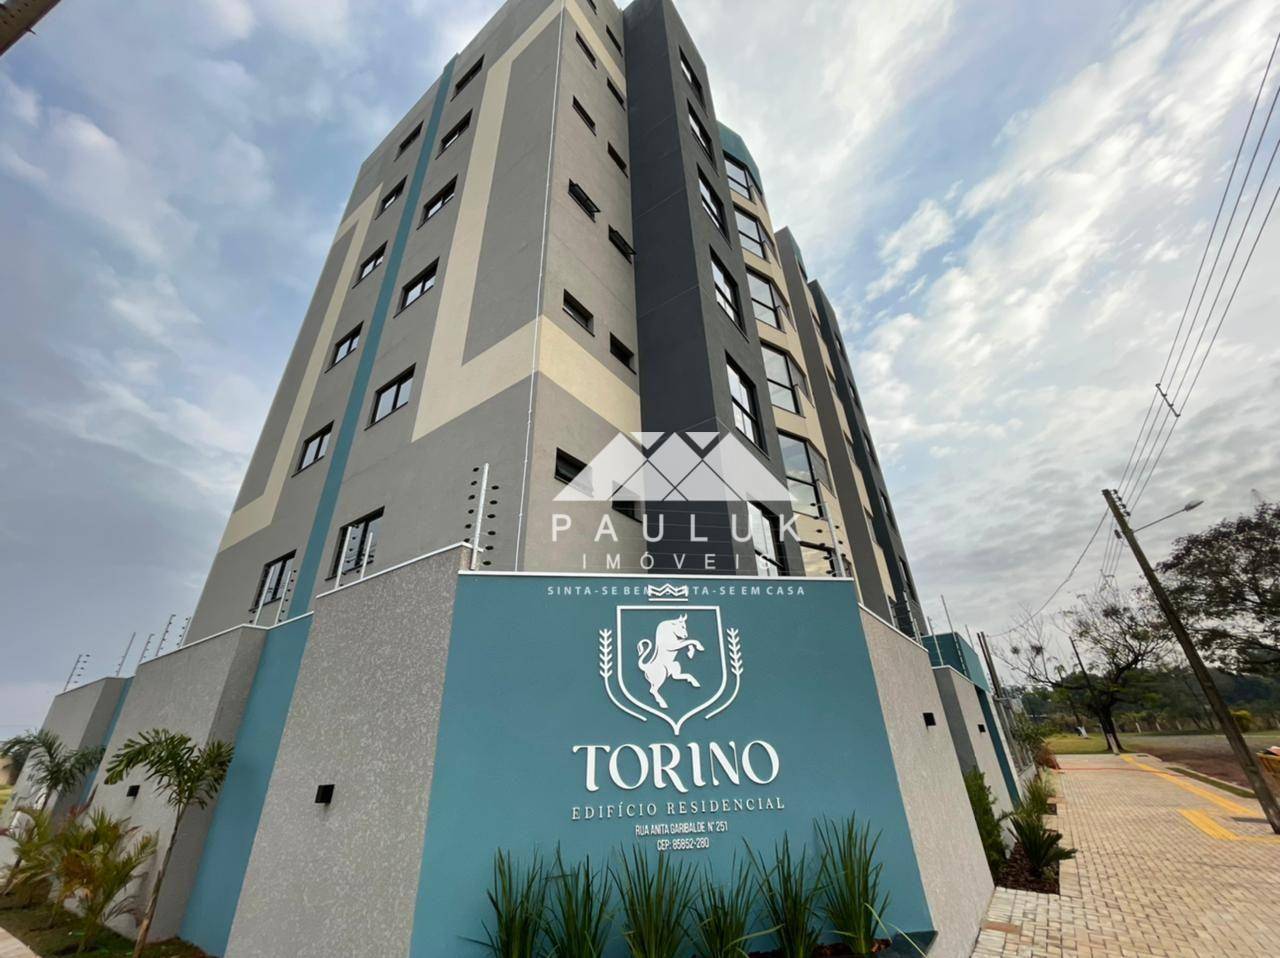 Apartamento com 2 Dormitórios Sendo 1 Suíte à venda Por R$ 725.000 - Edifício Residencial Torino - F | PAULUK IMÓVEIS | Portal OBusca